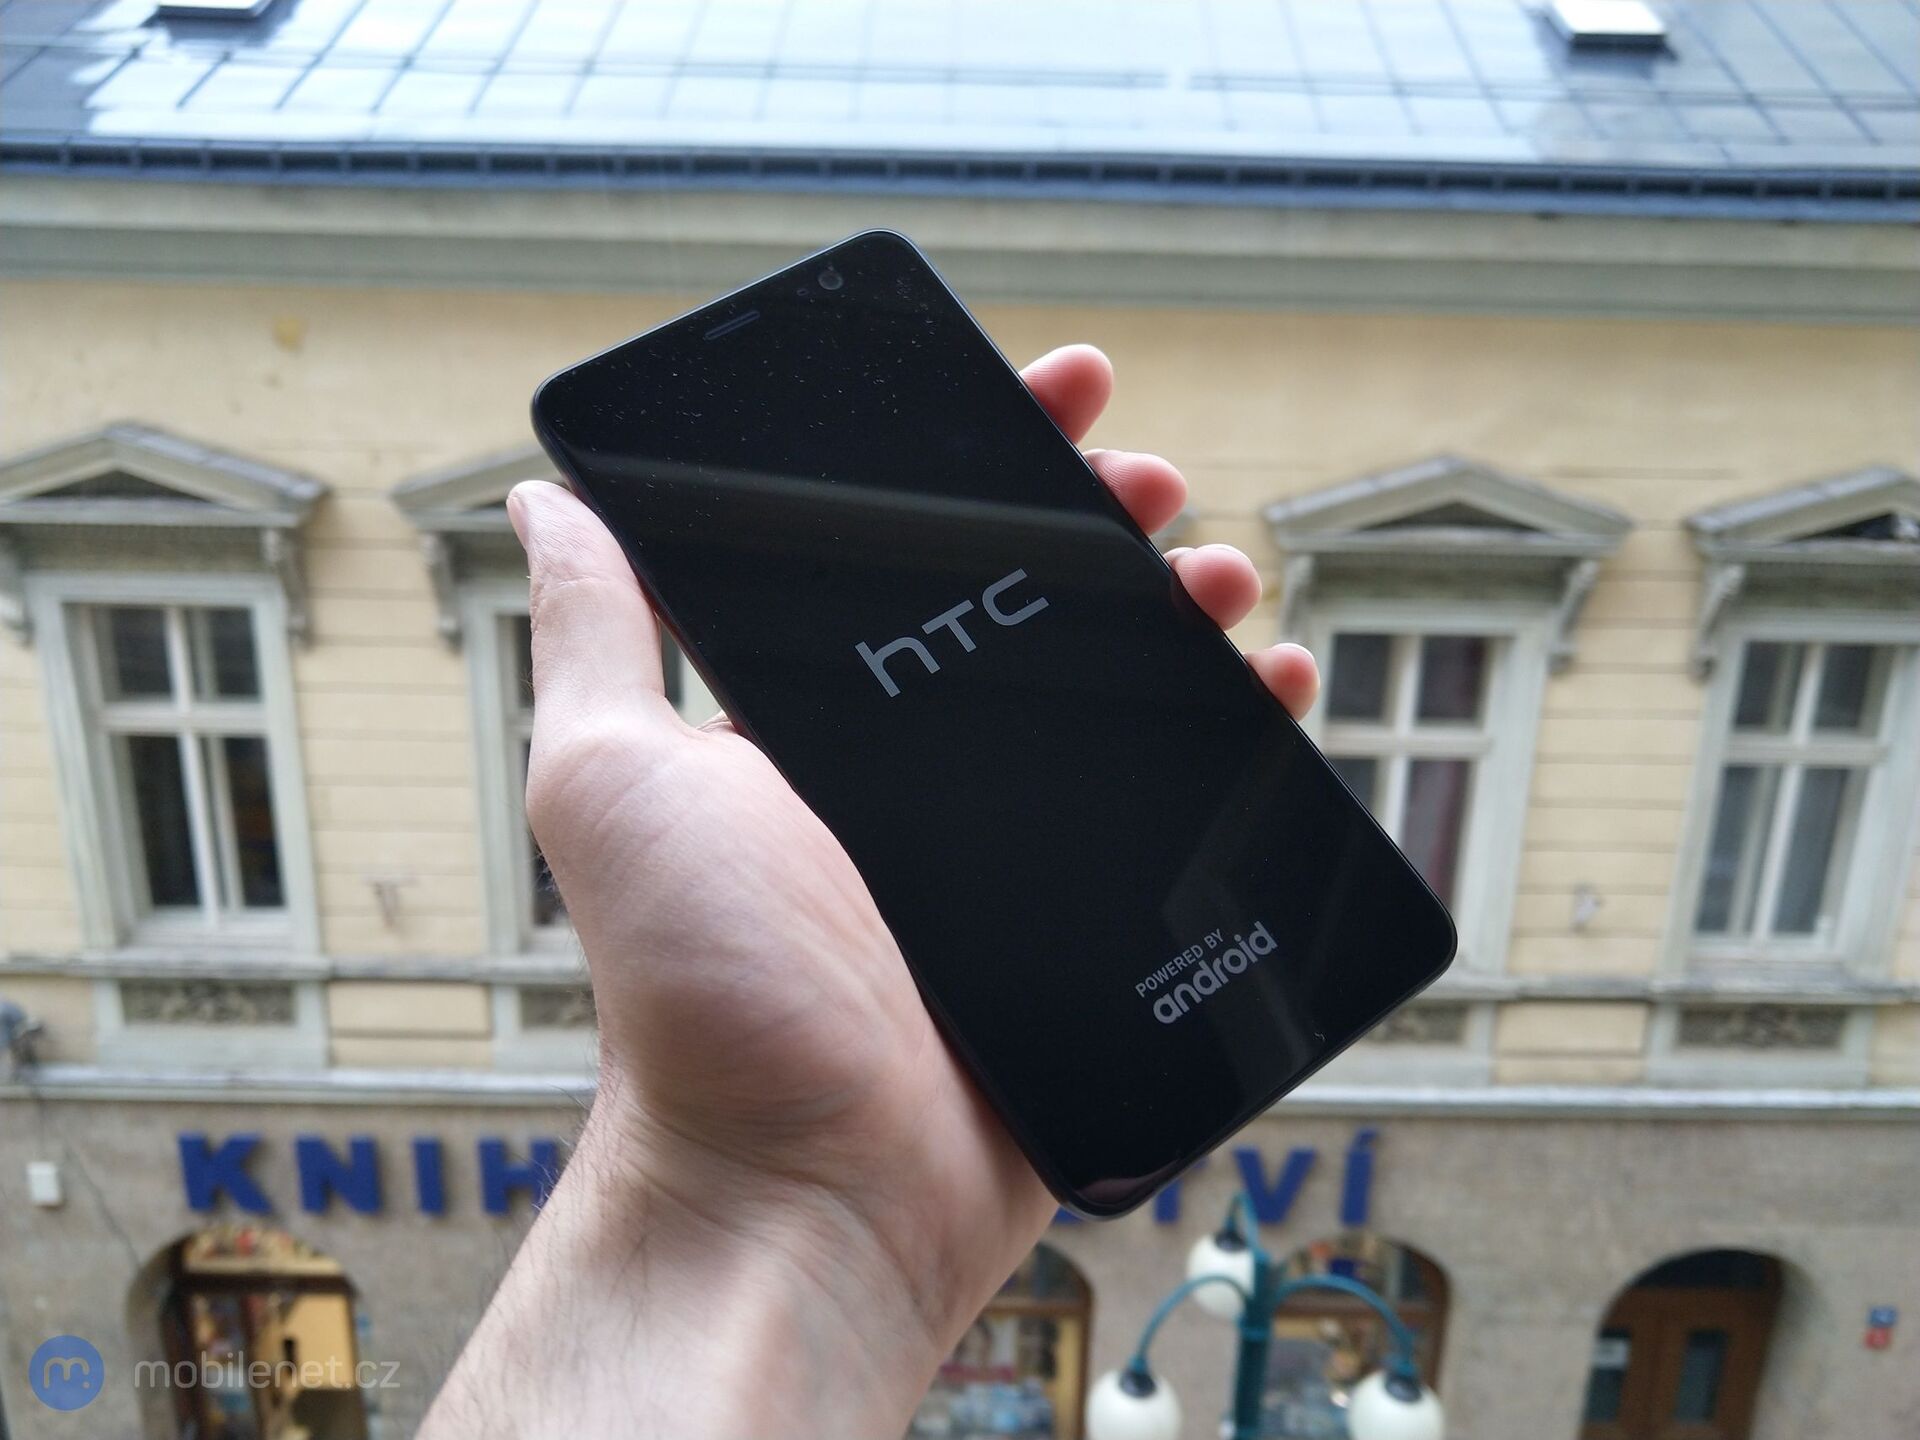 HTC U11+